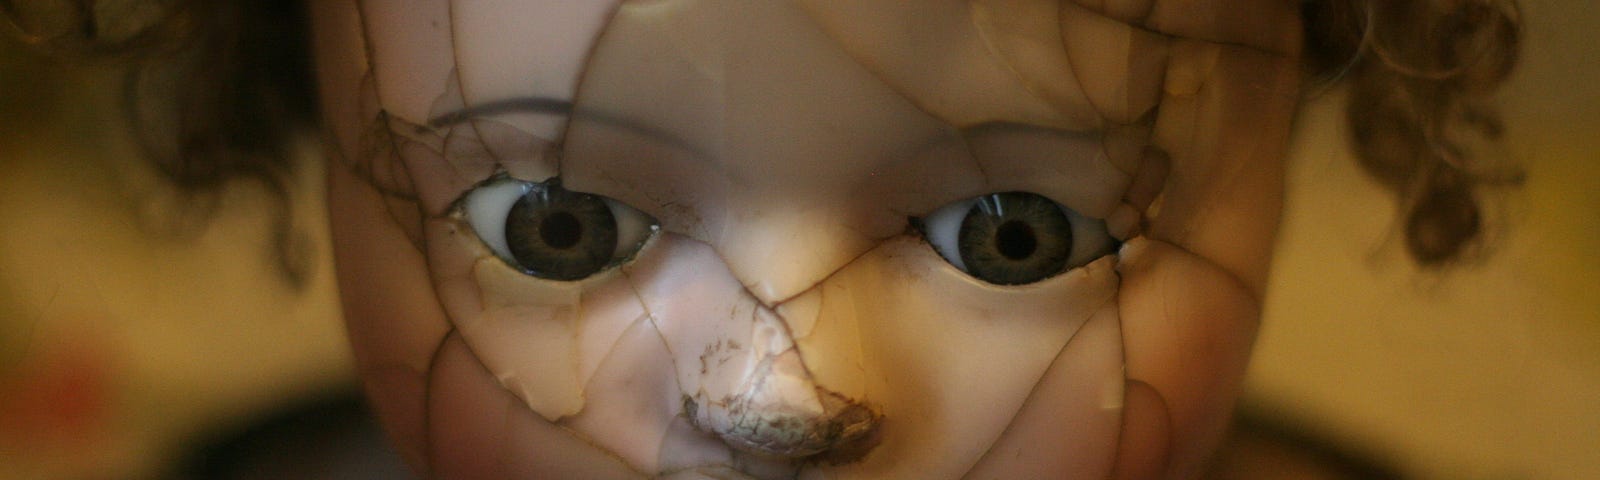 A broken doll